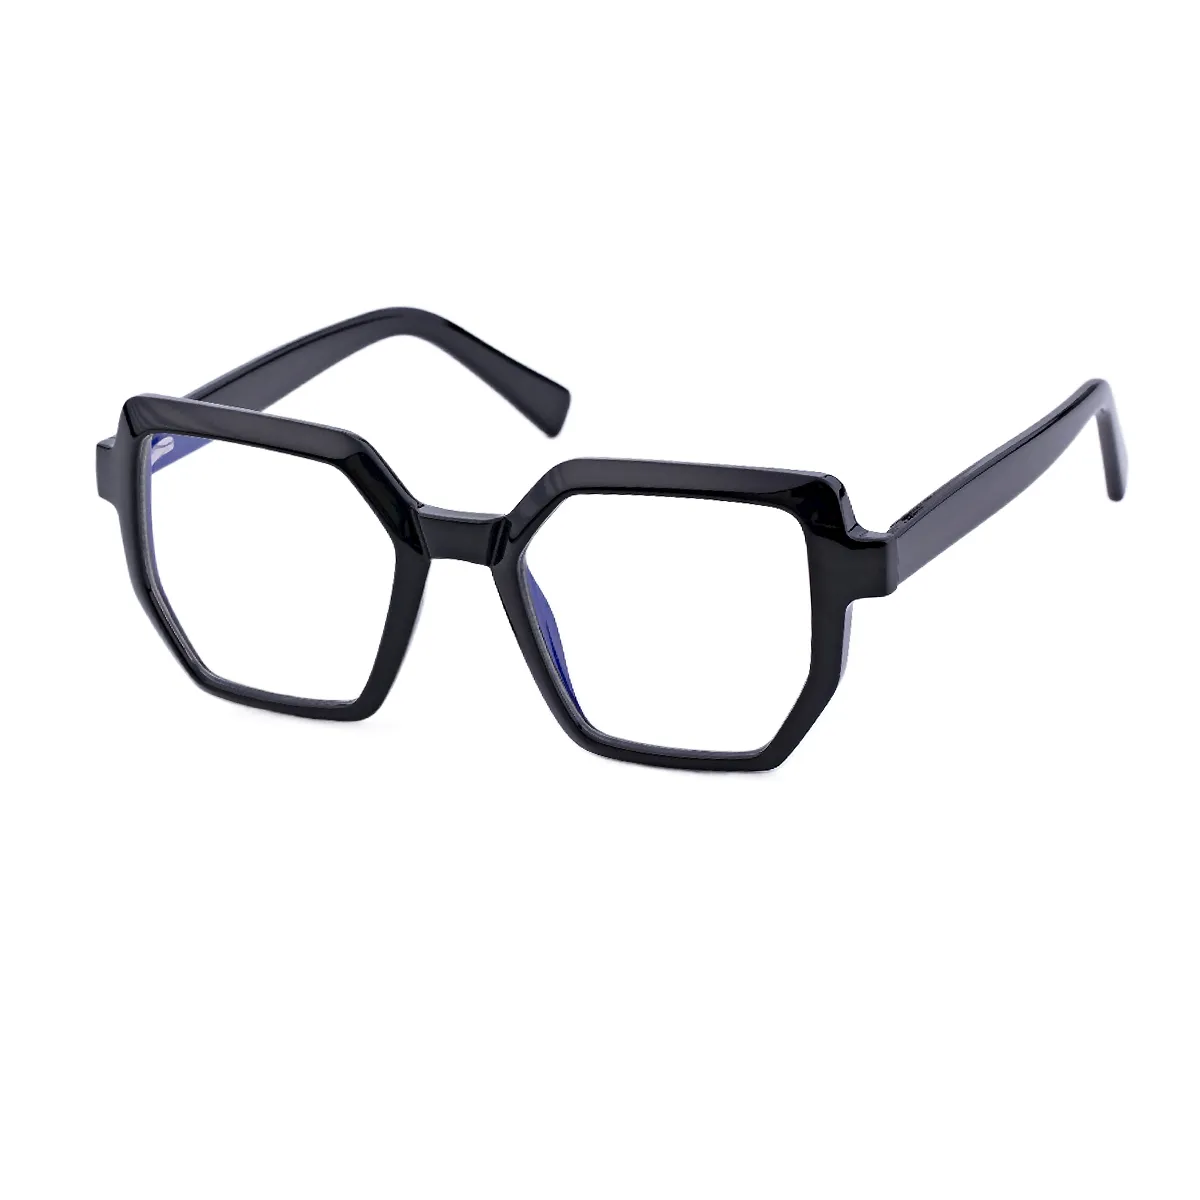 Fashion Geometric Black Eyeglasses for Women